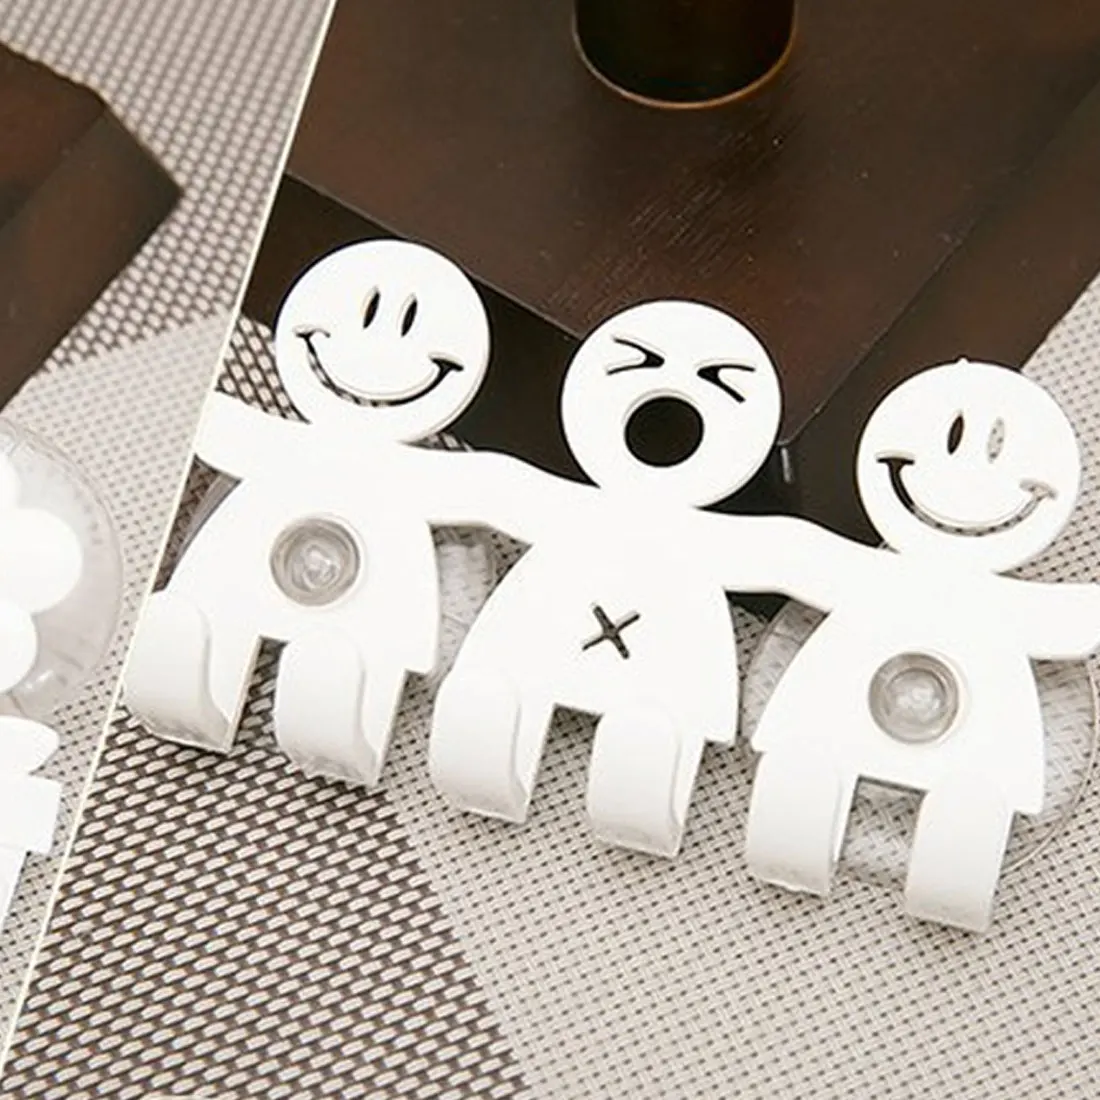 5 положения держатель зубной щетки Крючки-присоски для ванной комнаты наборы милая улыбка мультфильм присоска держатель зубной щетки